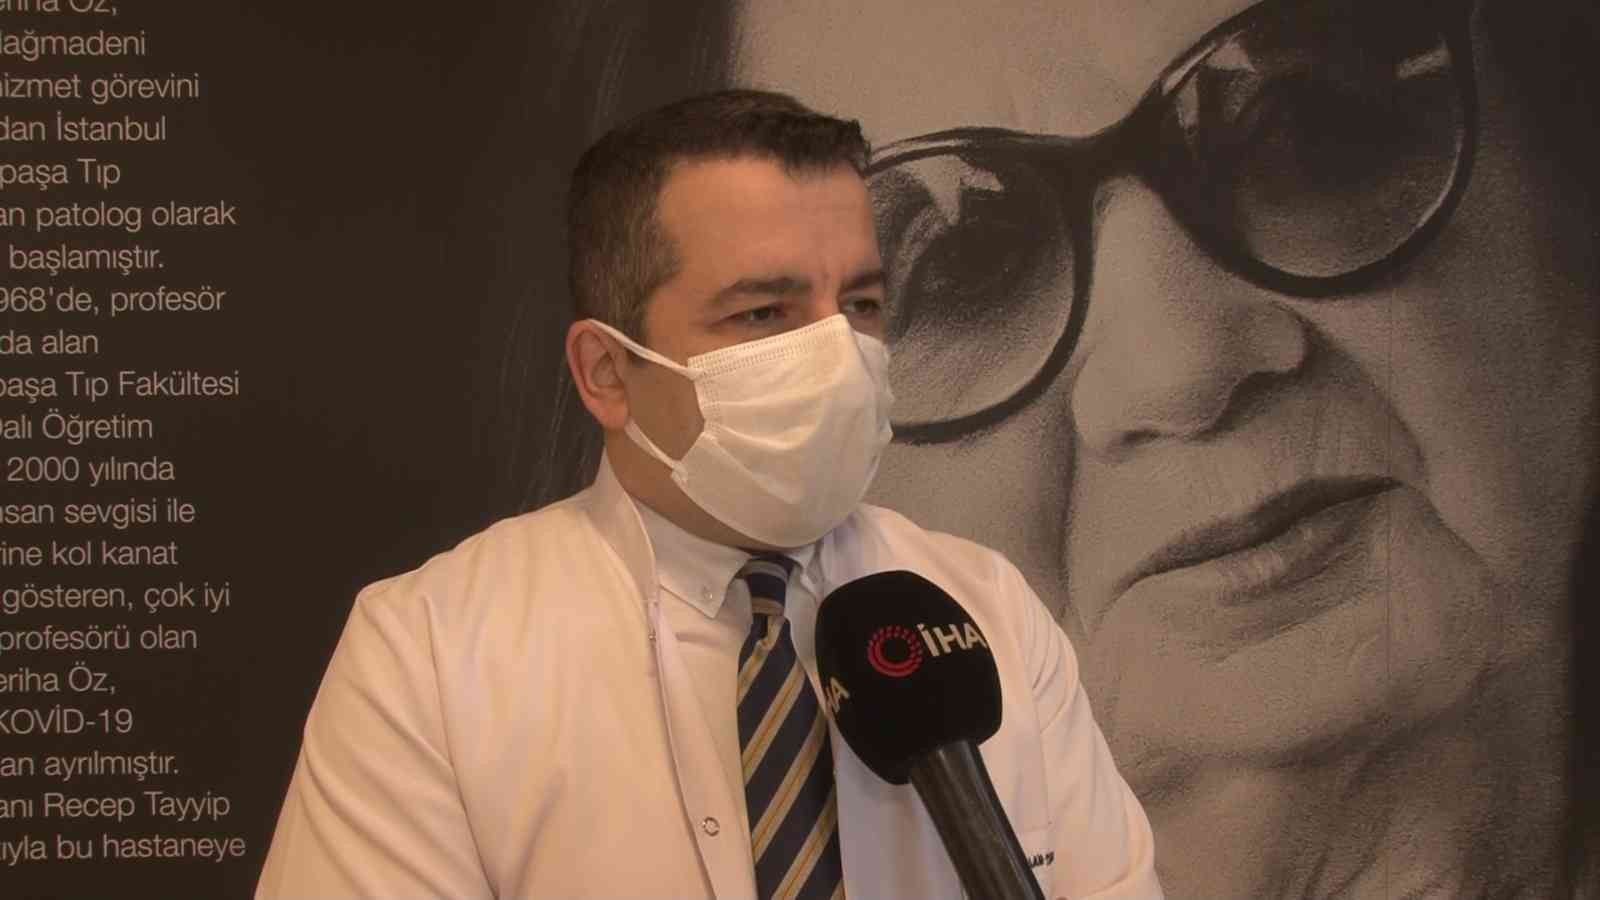 Prof. Dr. Feriha Öz Acil Durum Hastanesi 2021 yılında 378 bin covid hastasına şifa dağıttı #istanbul